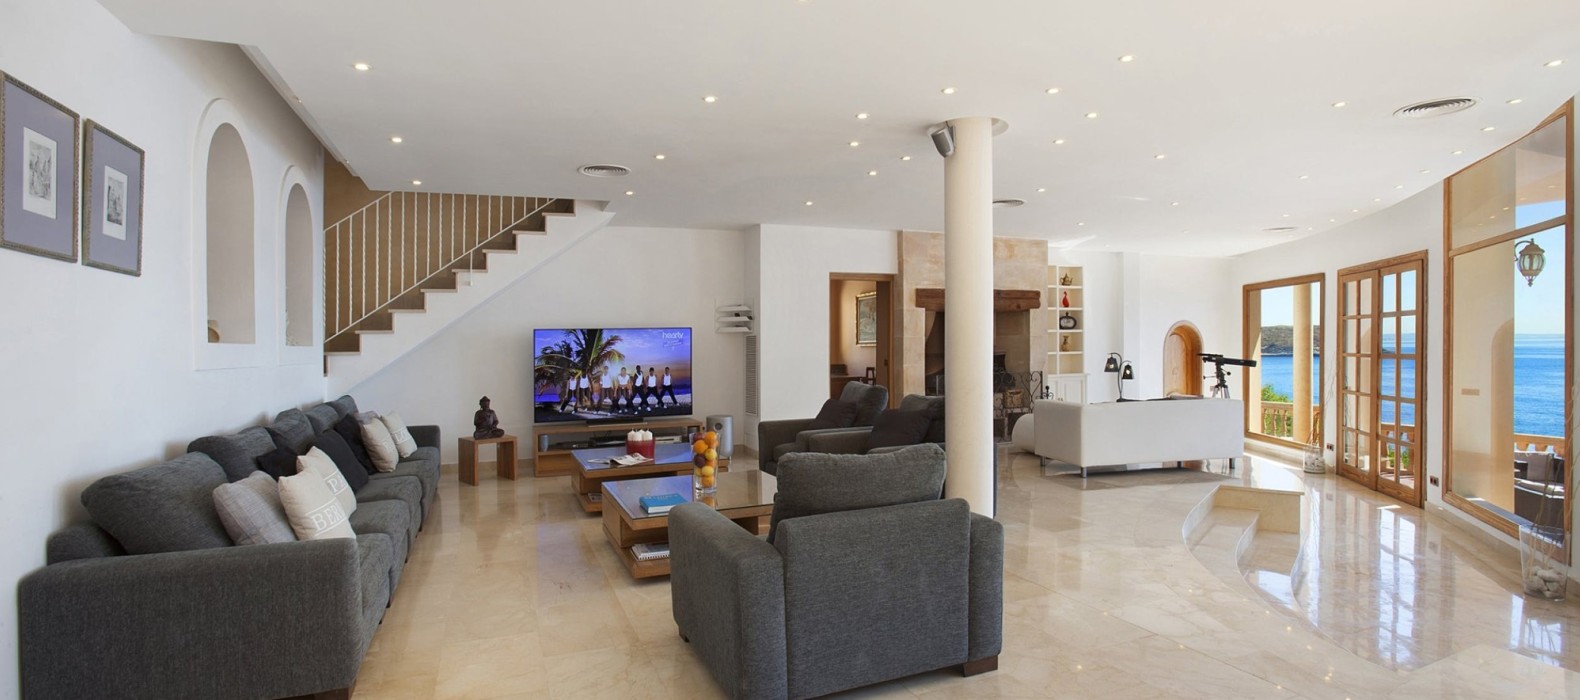 Living room of Villa Eol in Mallorca